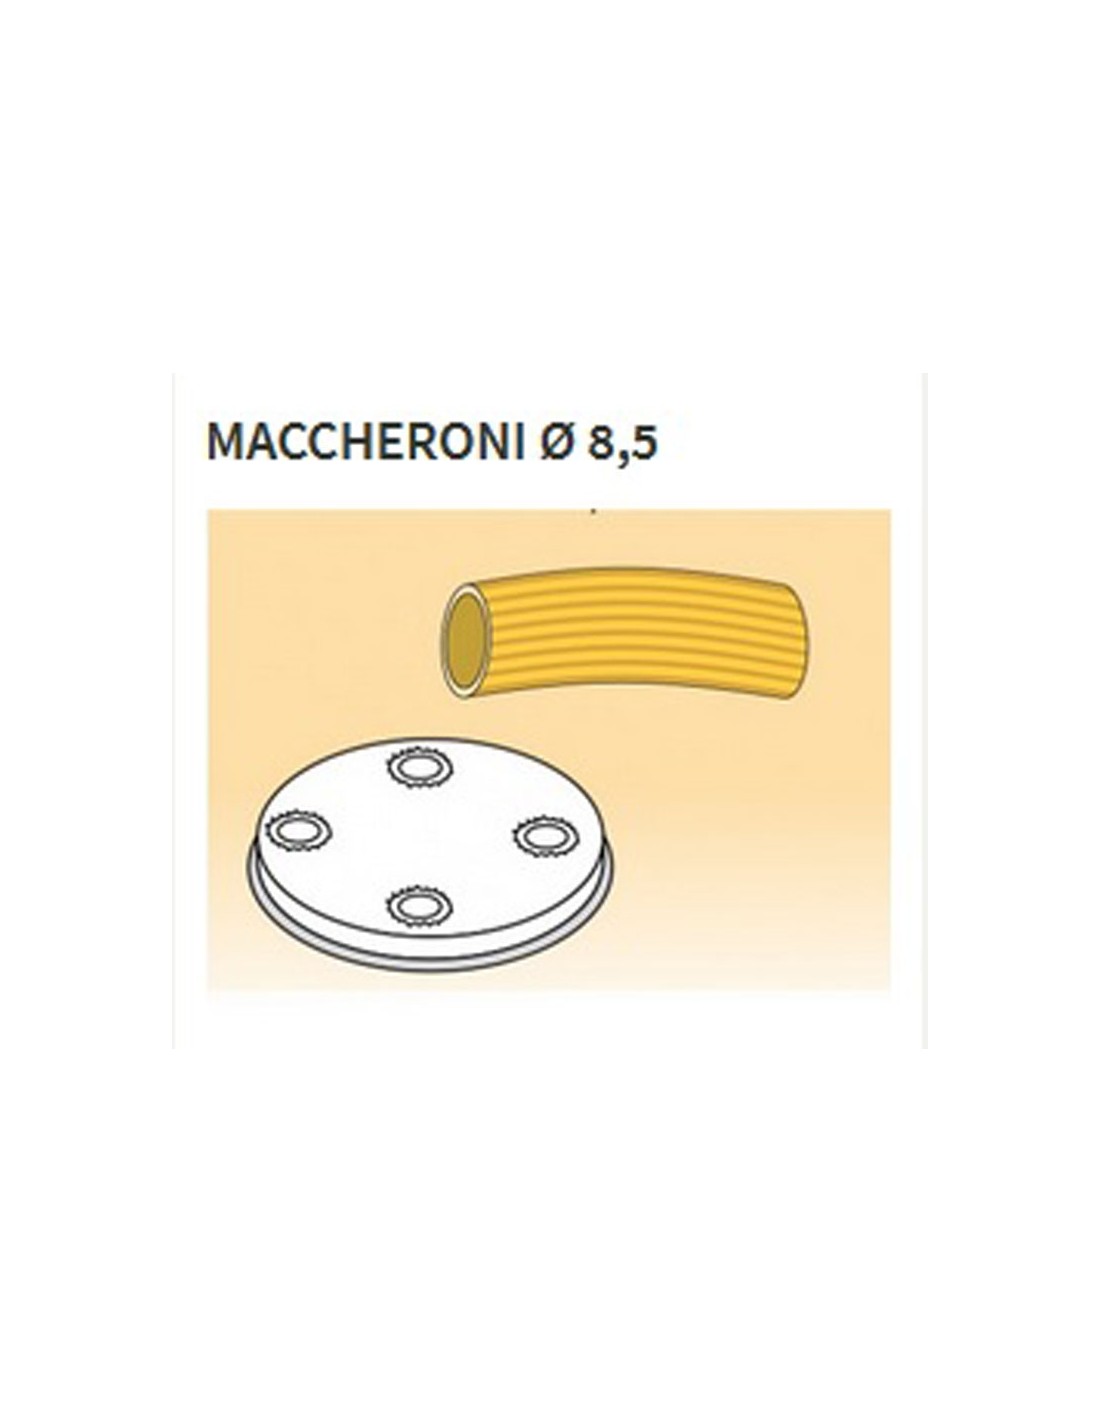 Matrices de aleación de latón de varias formas - Bronce - Para máquina de pasta fresca modelo MPF15 - Maccheroni Ø mm 8.5